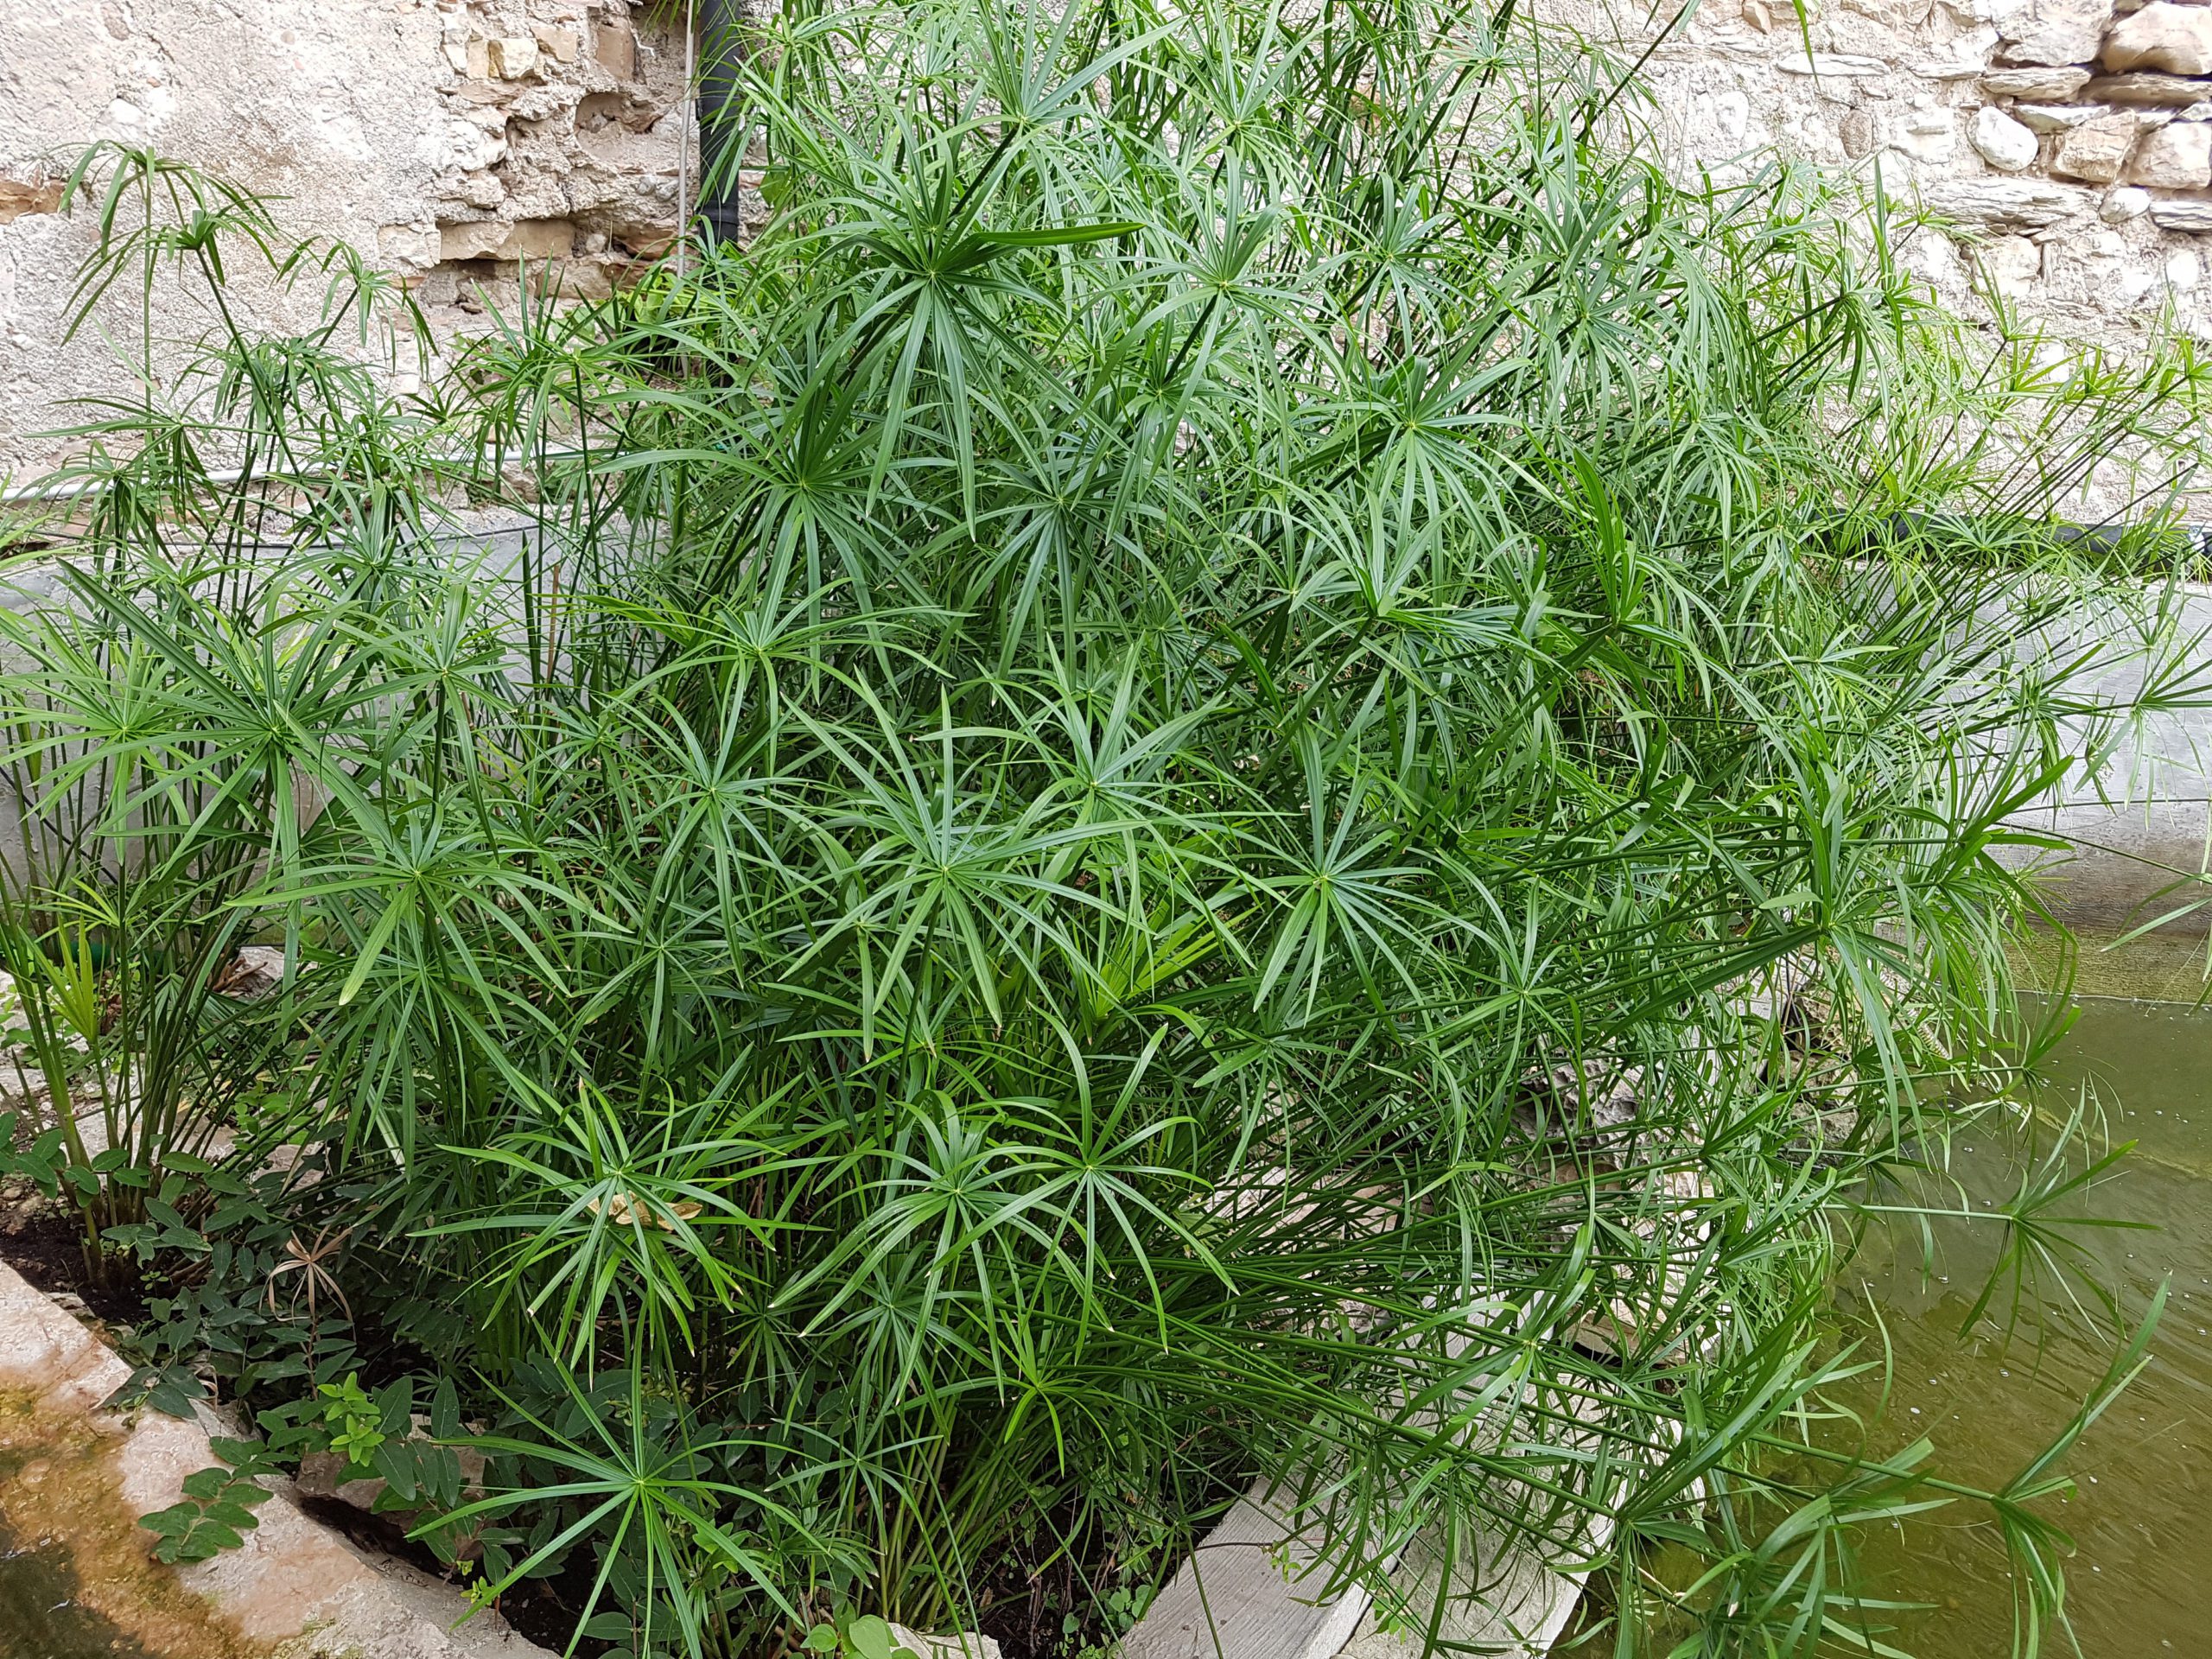 Cyperus Alternifolius